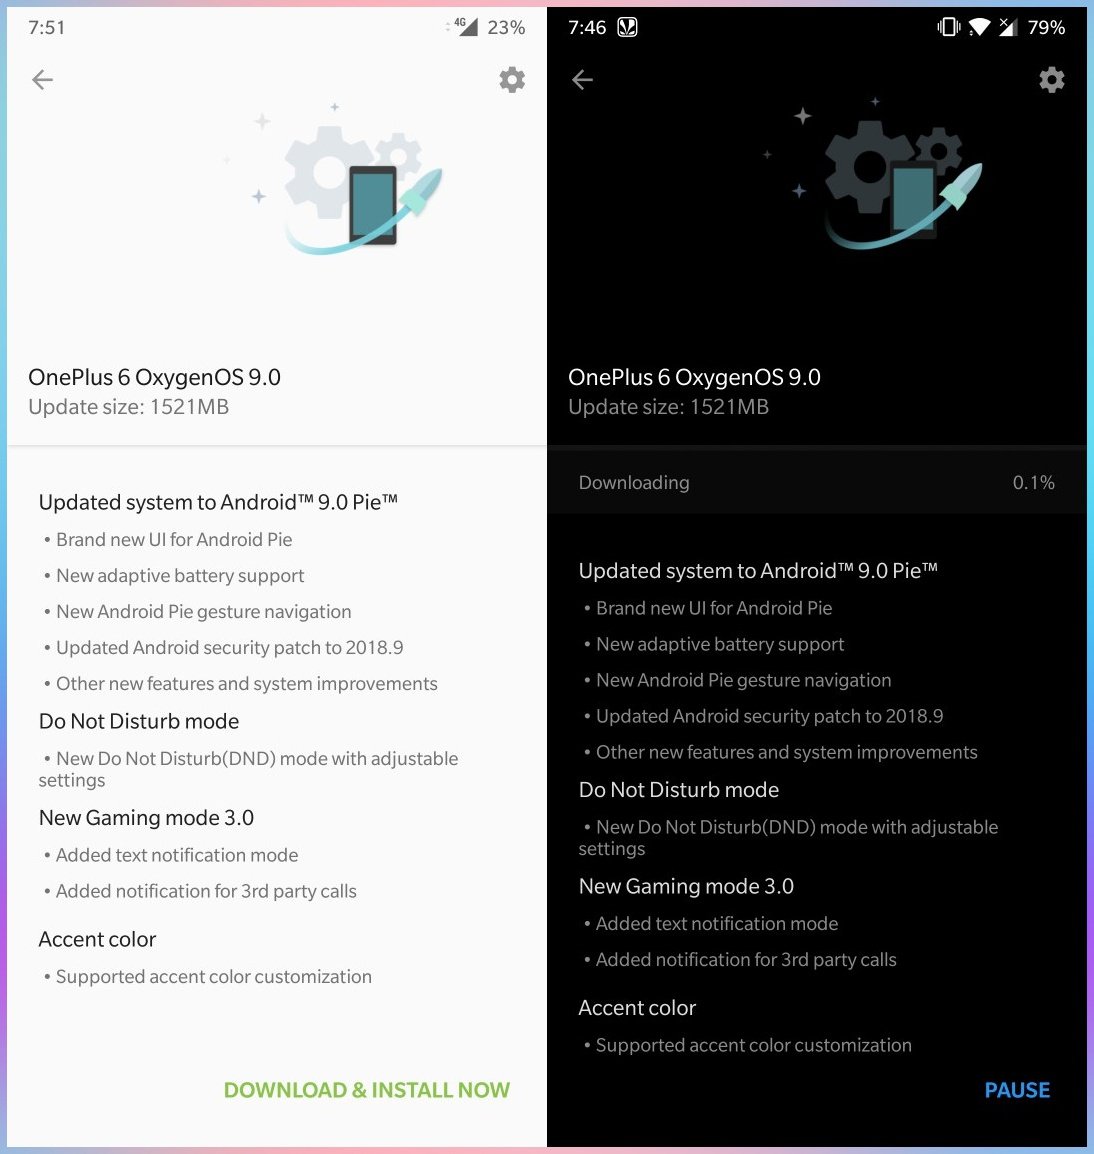 OnePlus 6 OxygenOS 9.0